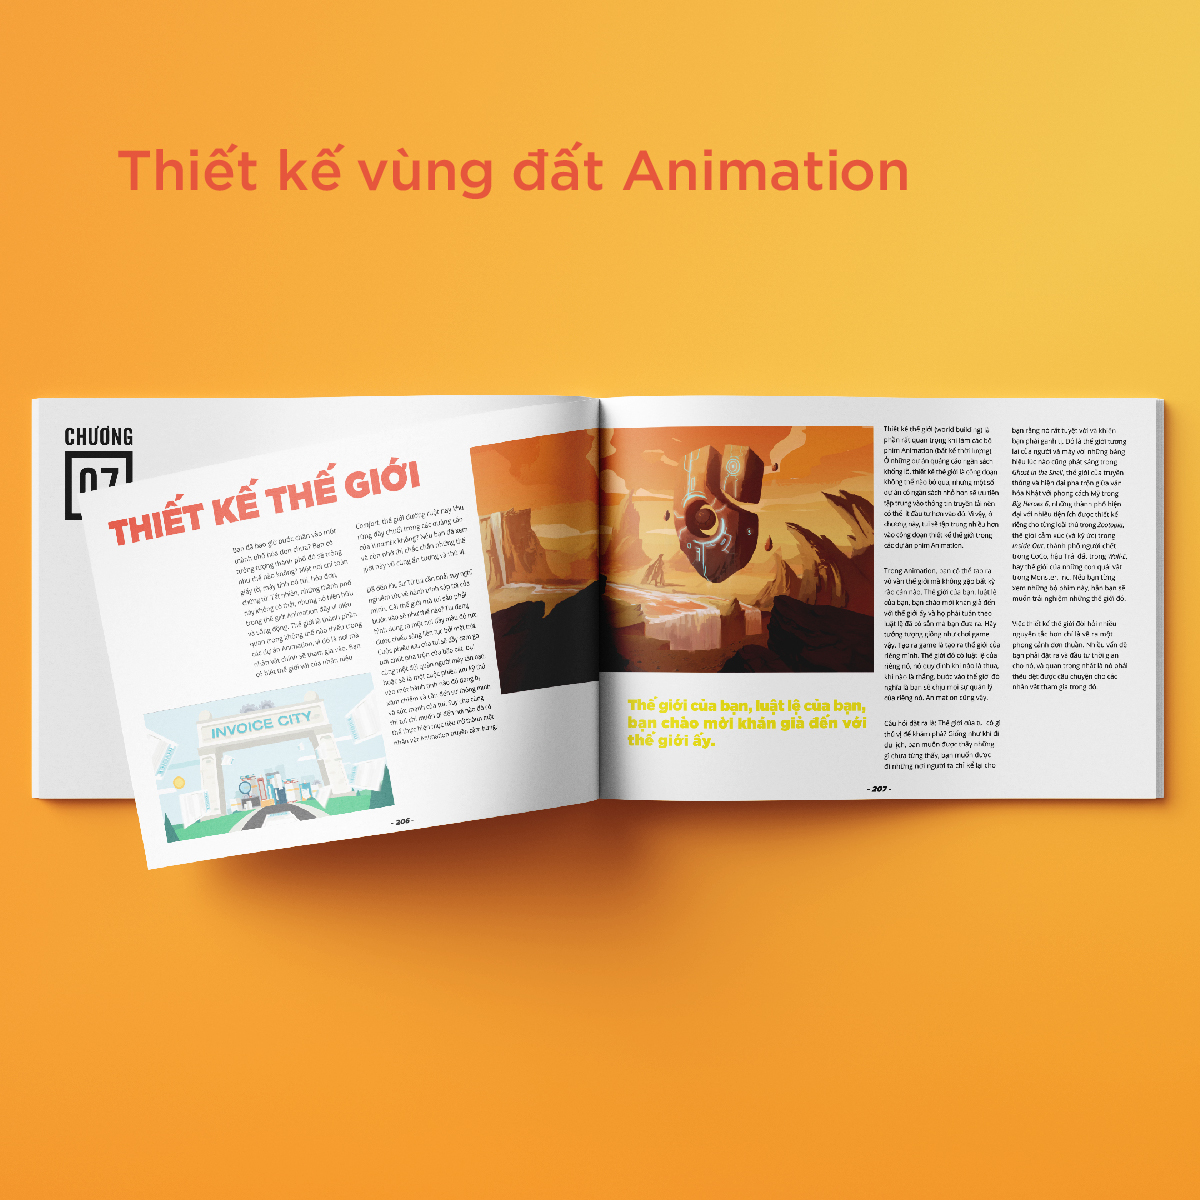 XỨ SỞ ANIMATION - Nghệ thuật kể chuyện bằng Animation